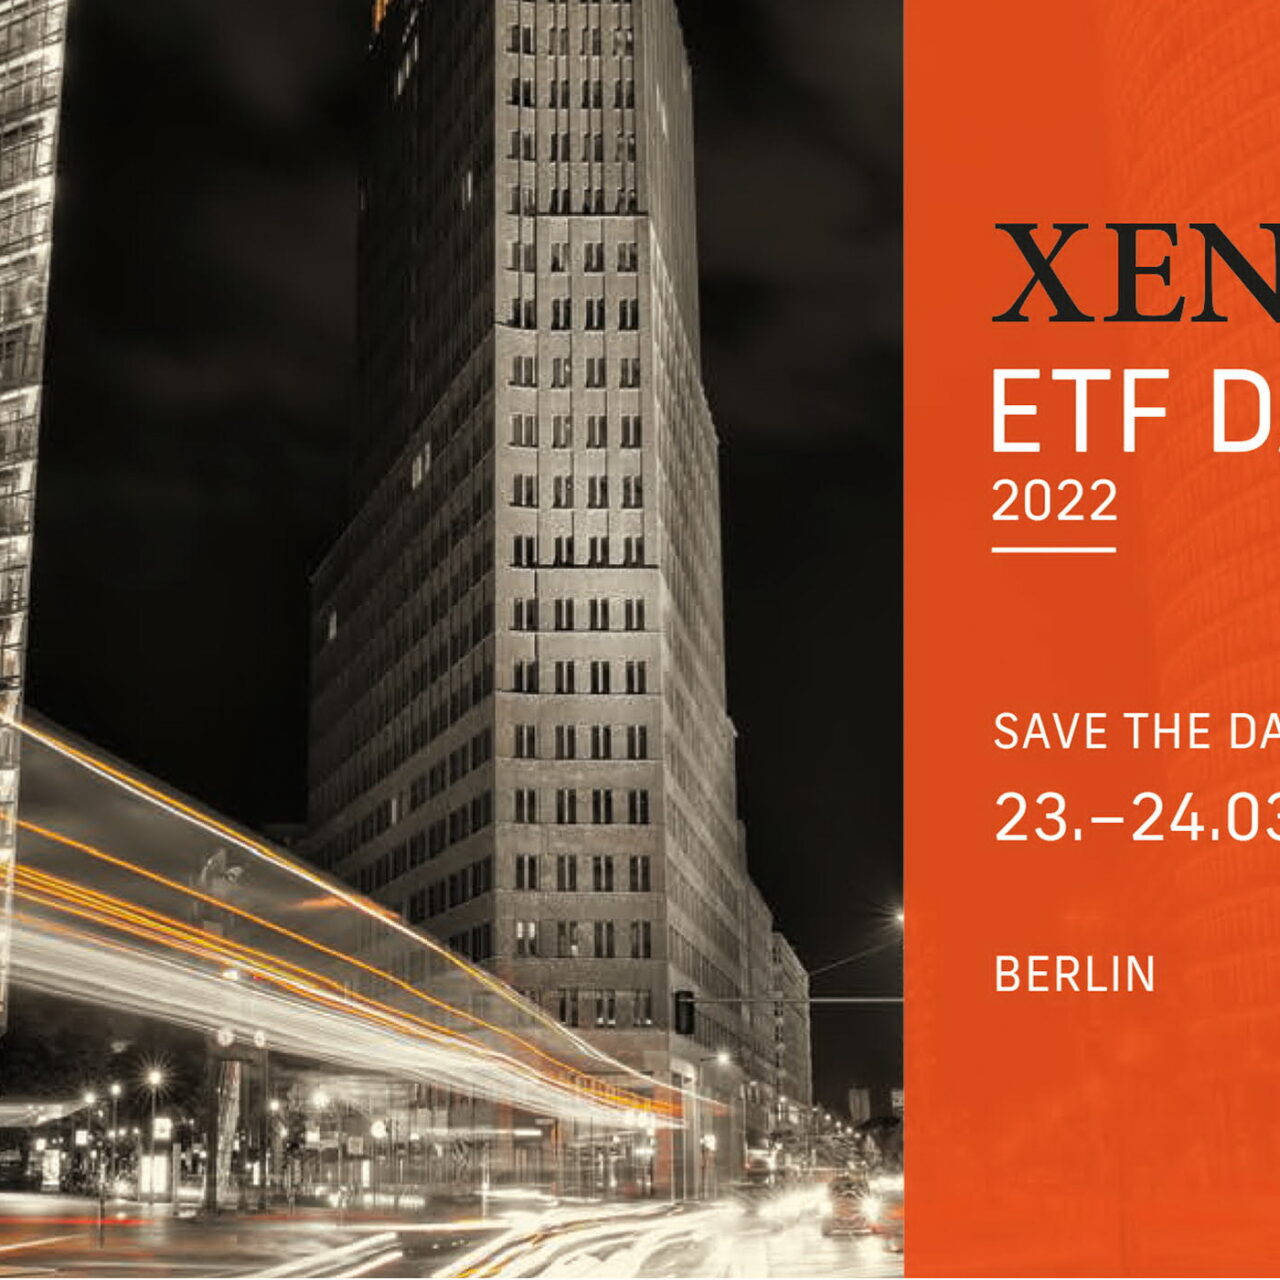 Neuer Termin — XENIX ETF DAYS finden im März statt